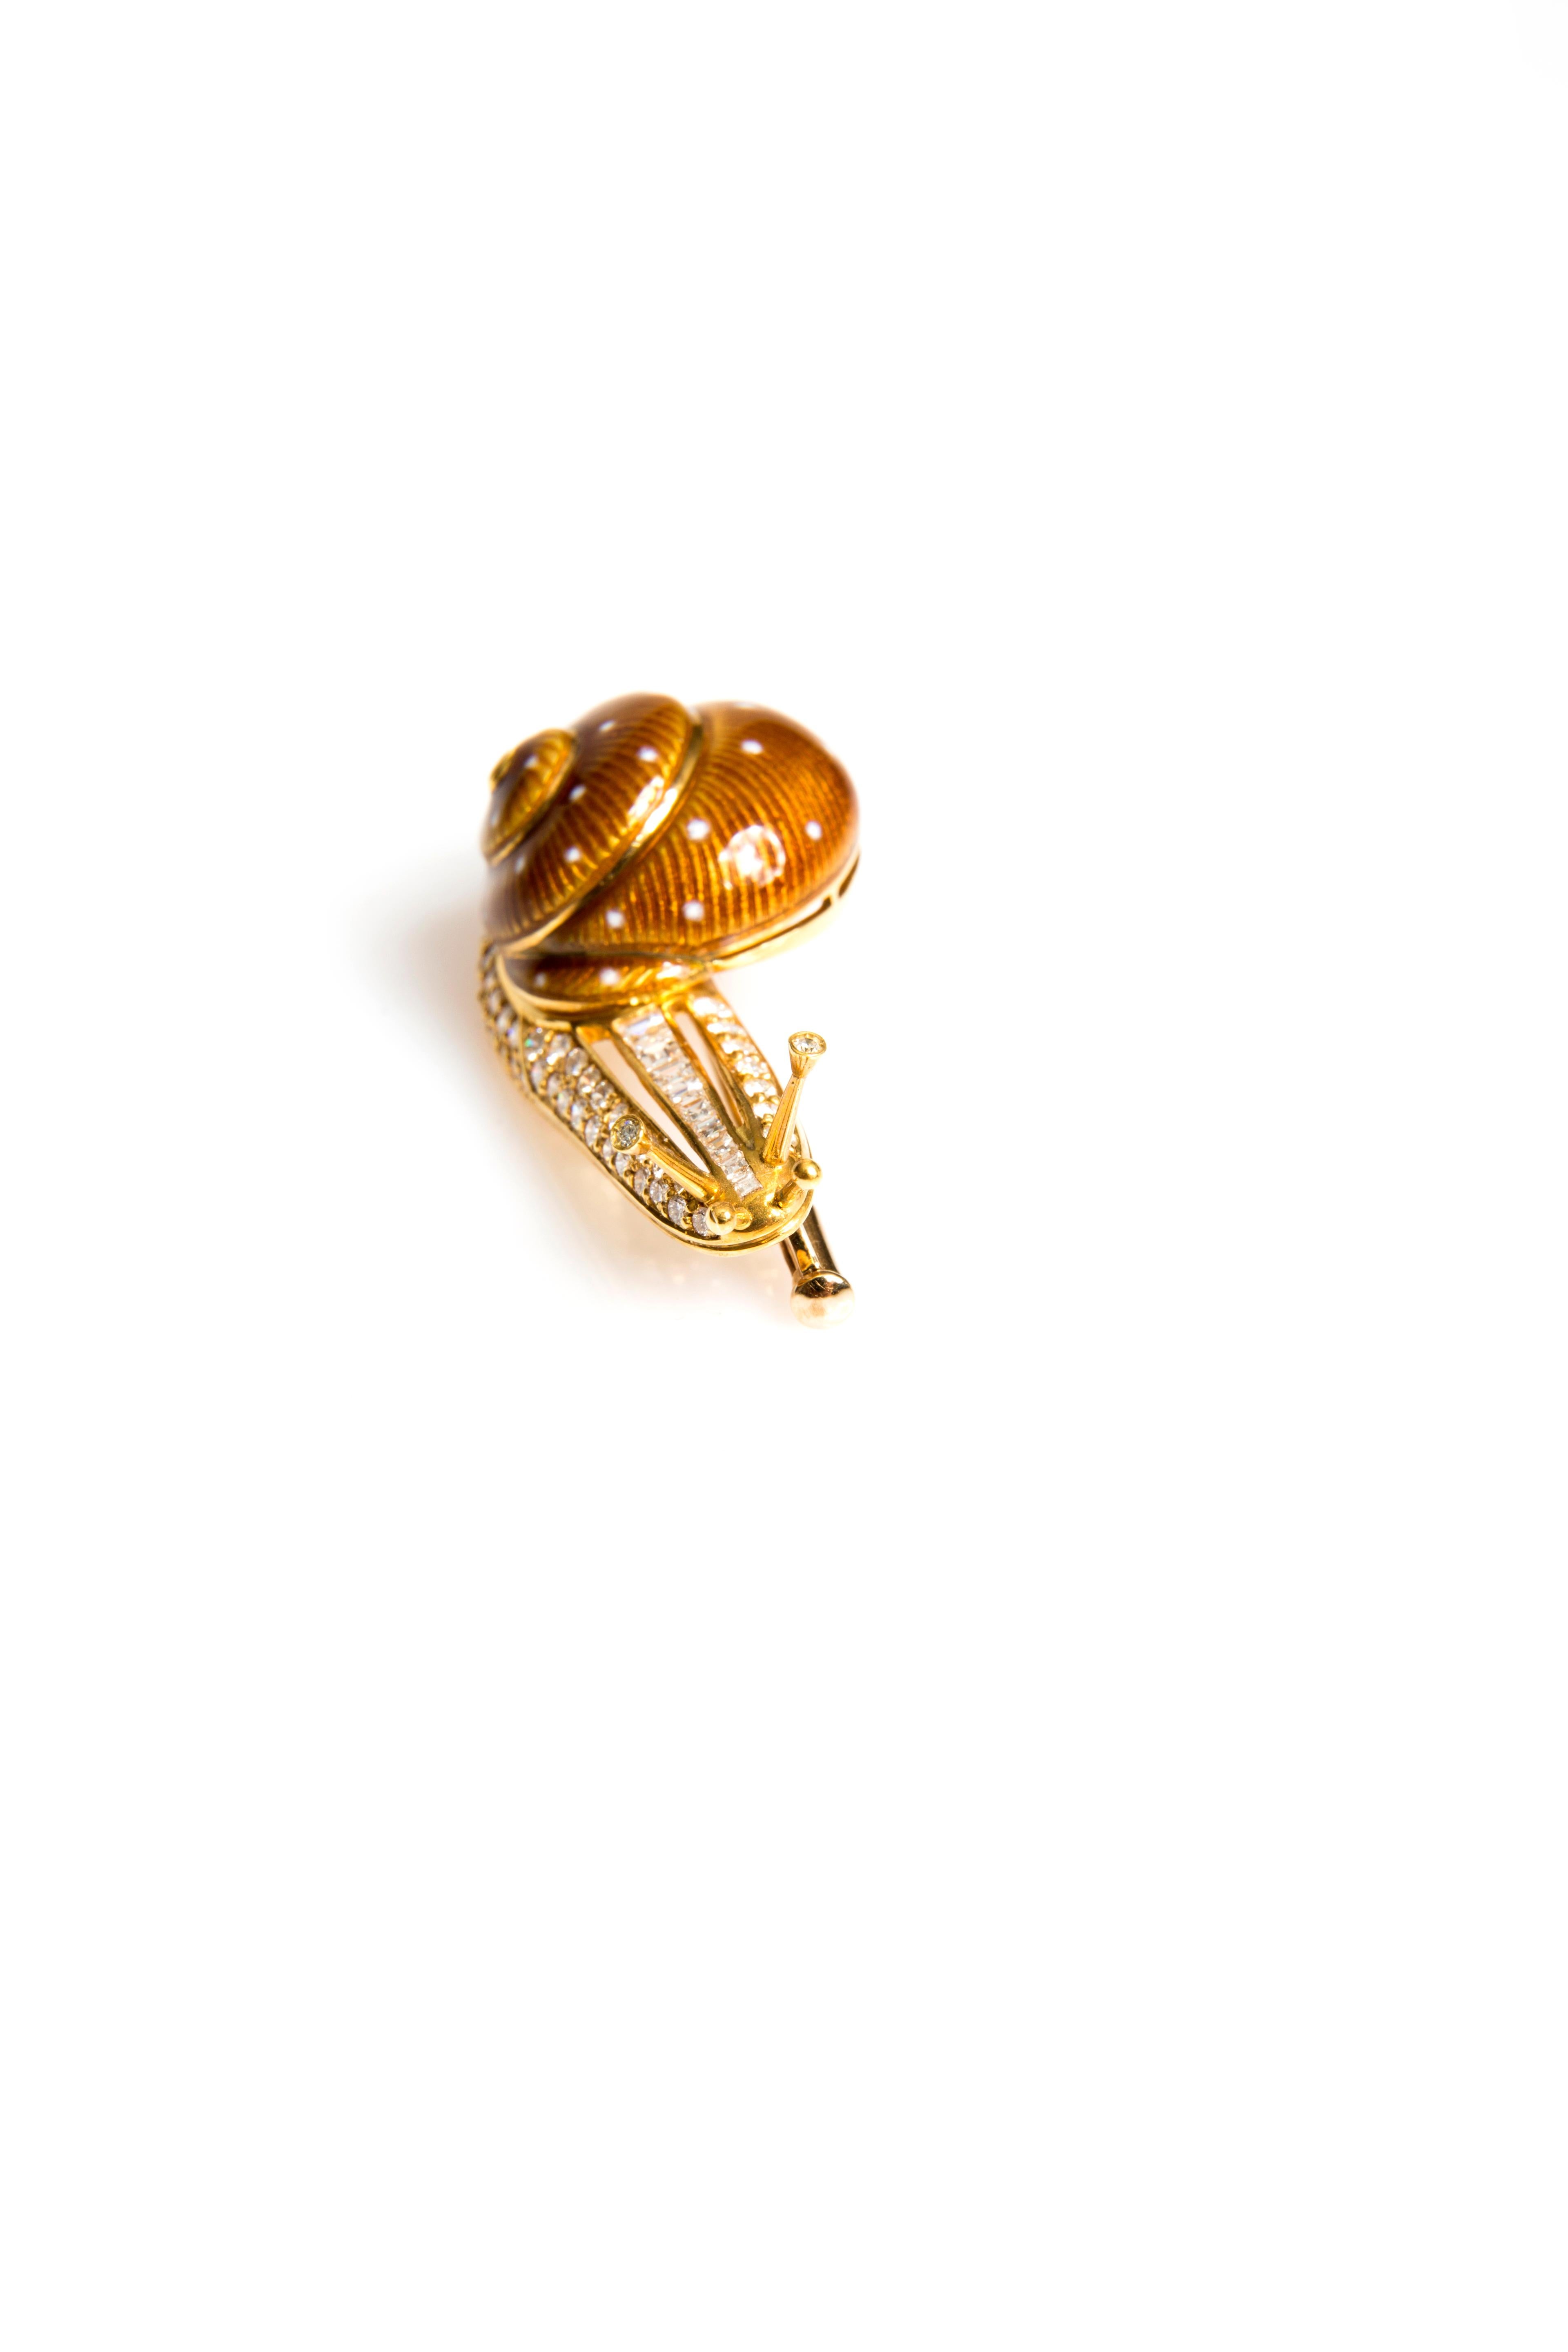 Sea Snail Brooch
Enamel
Diamonds 1.18 ct (Tw/vs)
Yellow Gold 18K